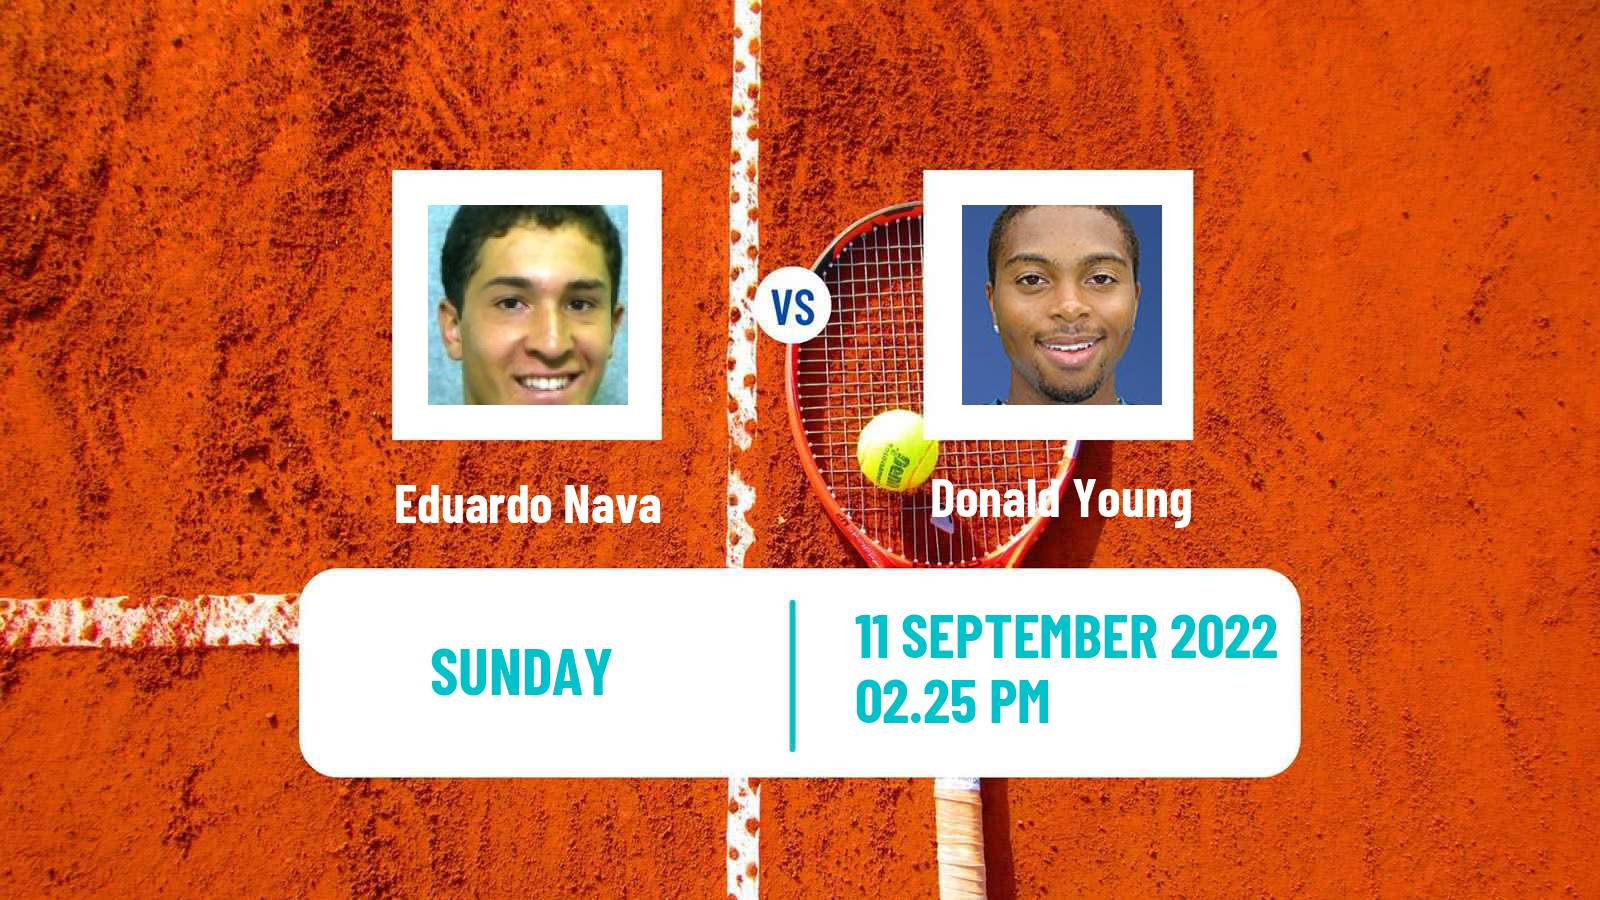 Tennis ATP Challenger Eduardo Nava - Donald Young